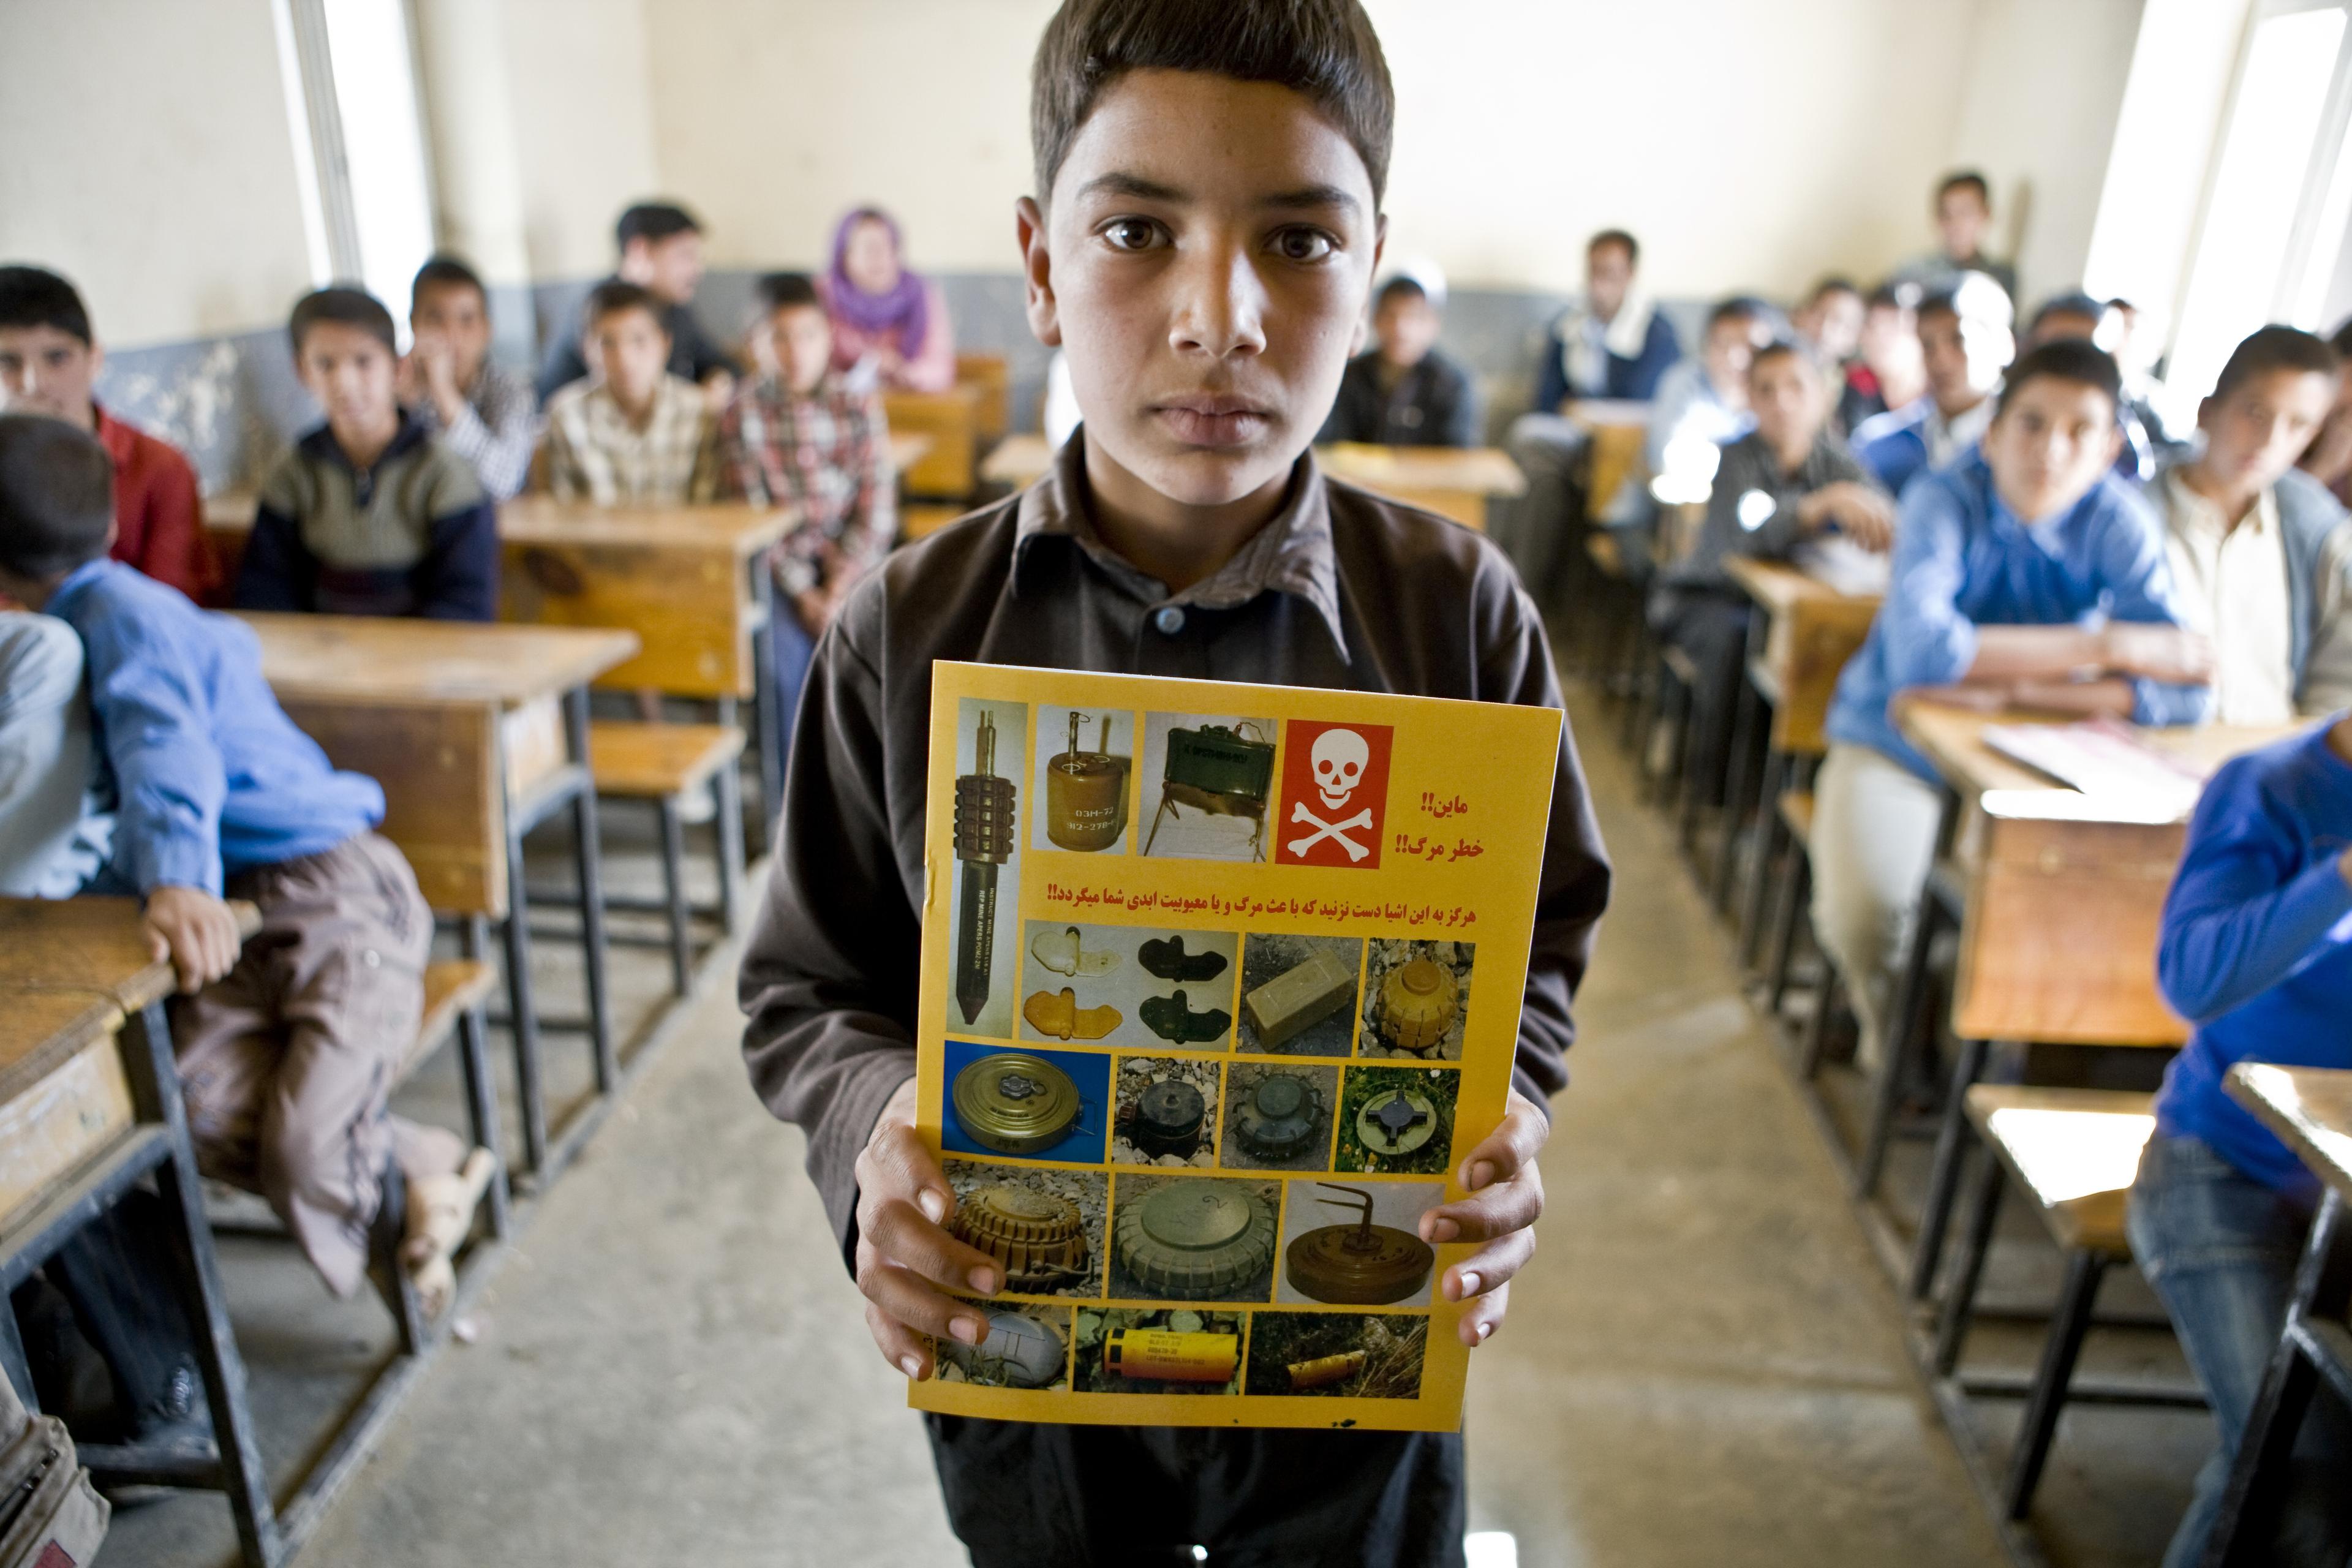 Un ragazzo è in piedi in classe con in mano un opuscolo sulle miniere. I suoi compagni di classe sono sullo sfondo.